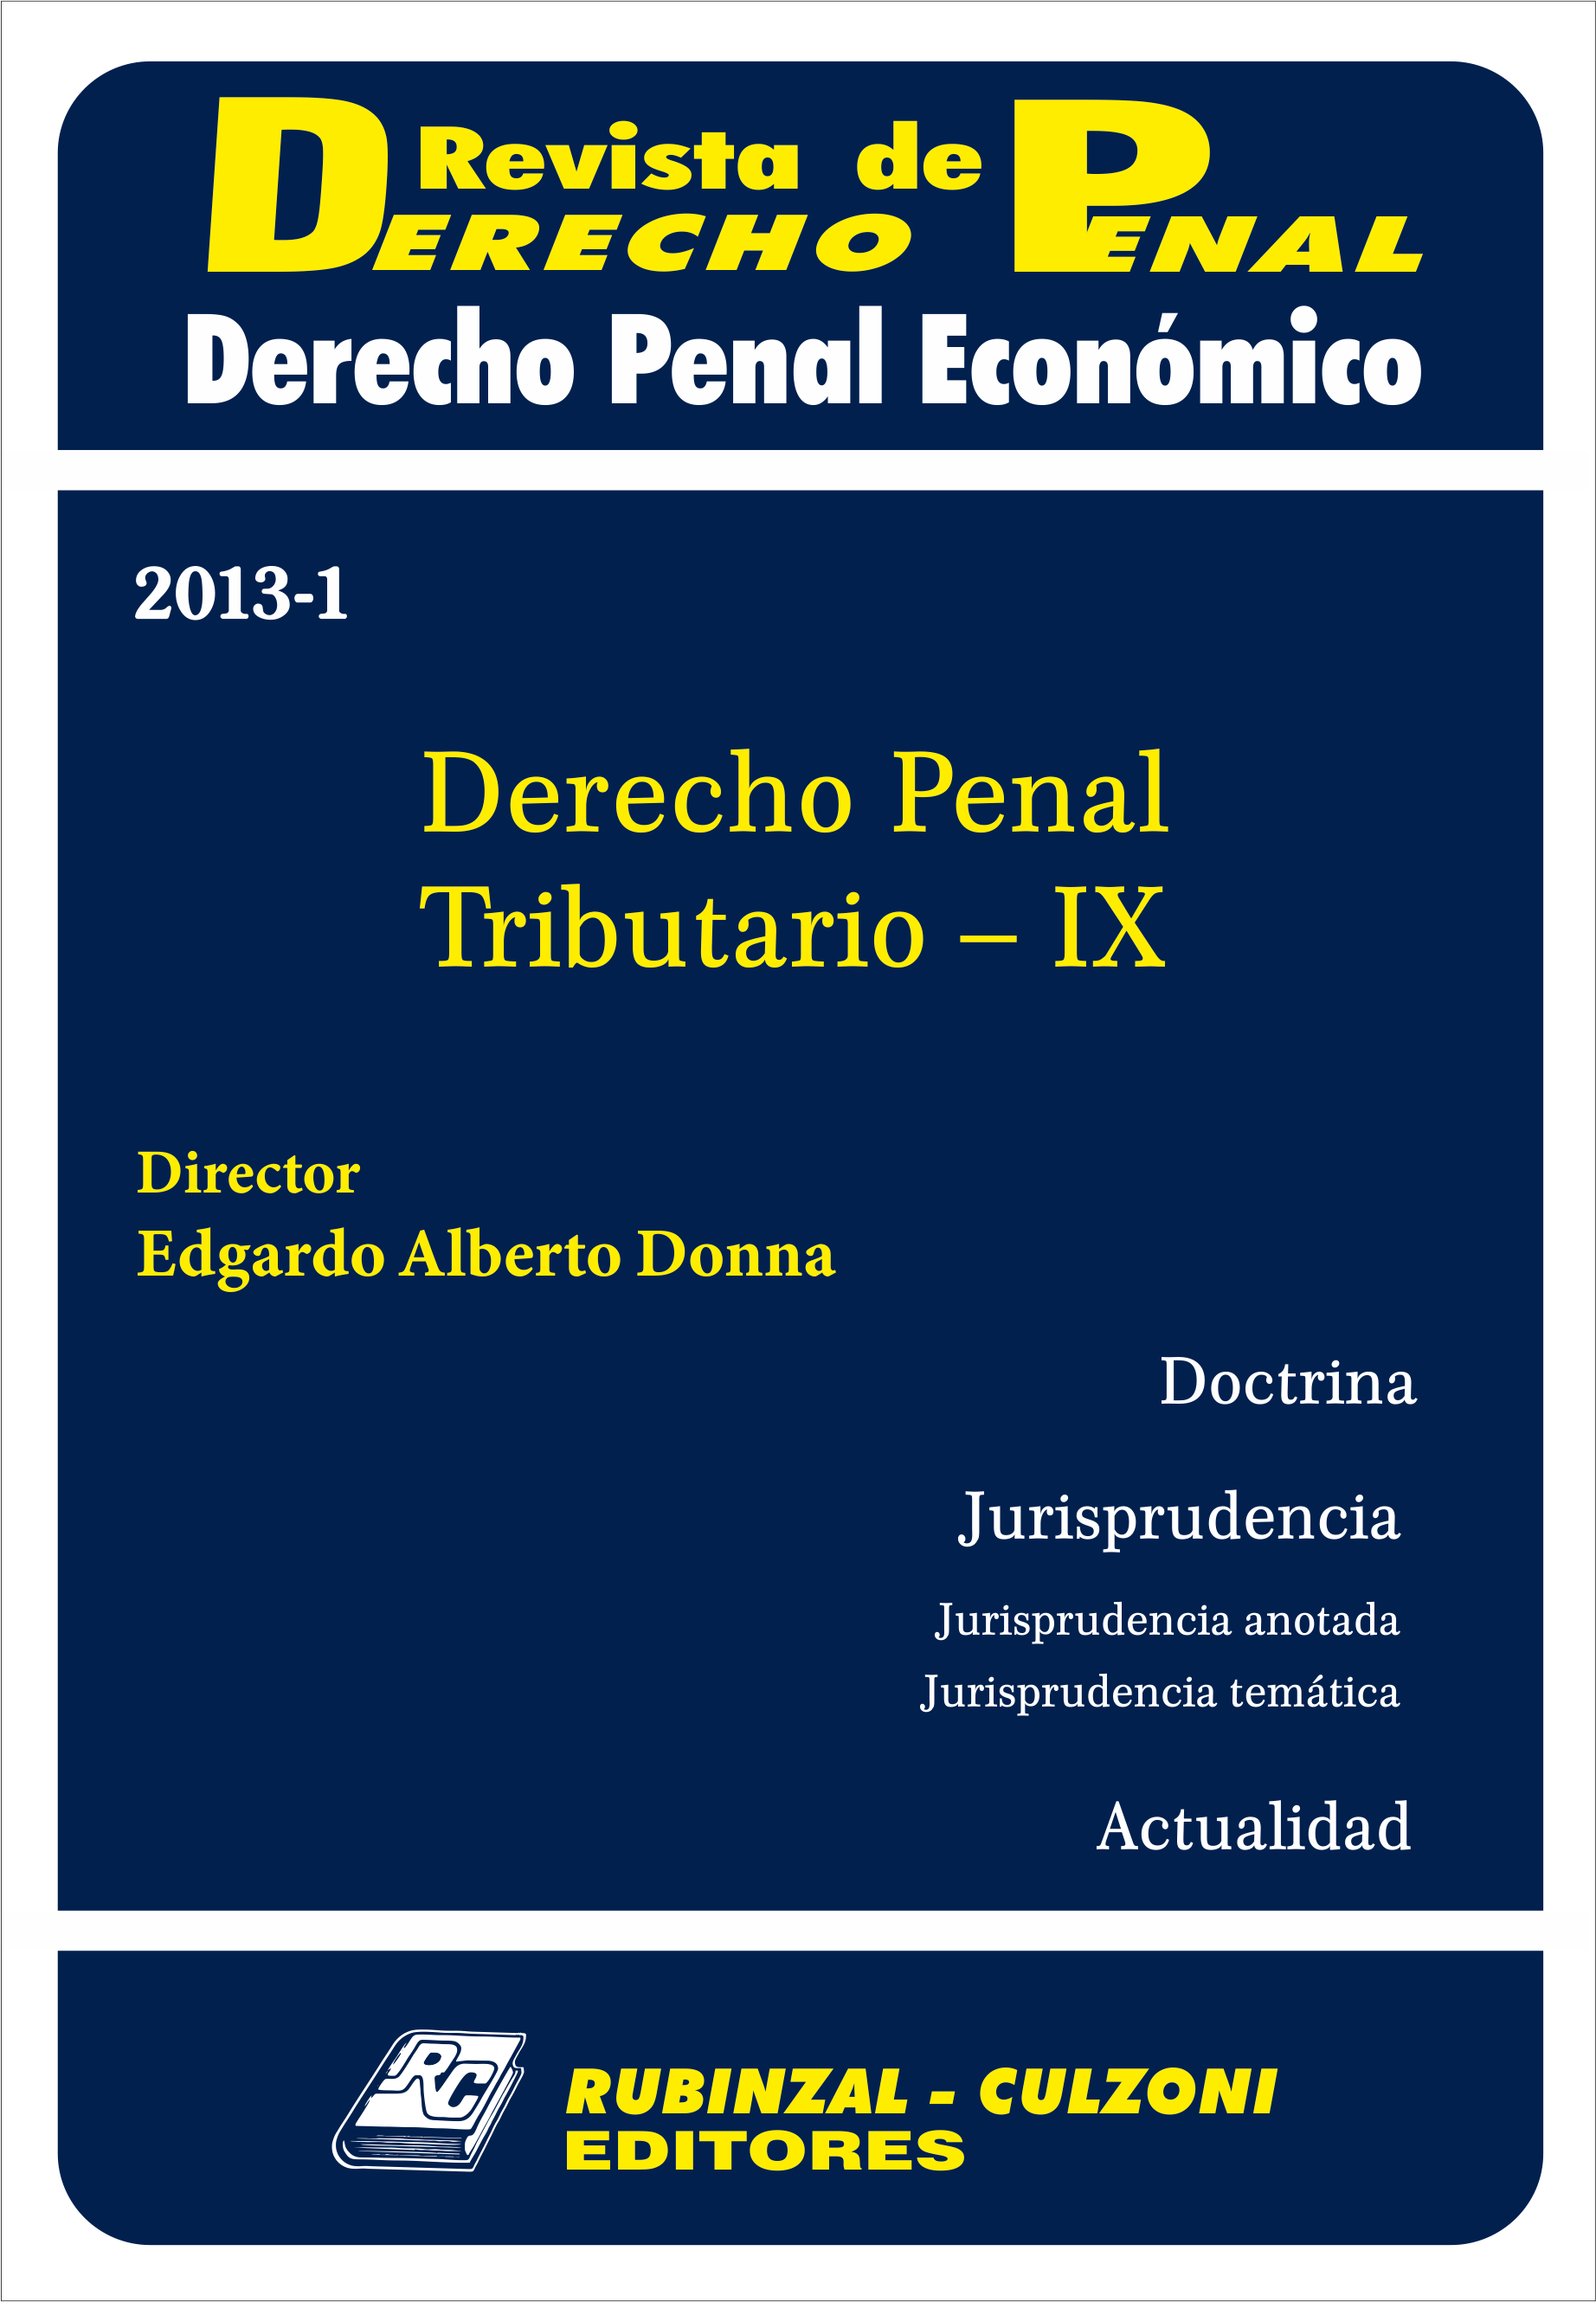 Revista de Derecho Penal Económico - Derecho Penal Tributario - IX